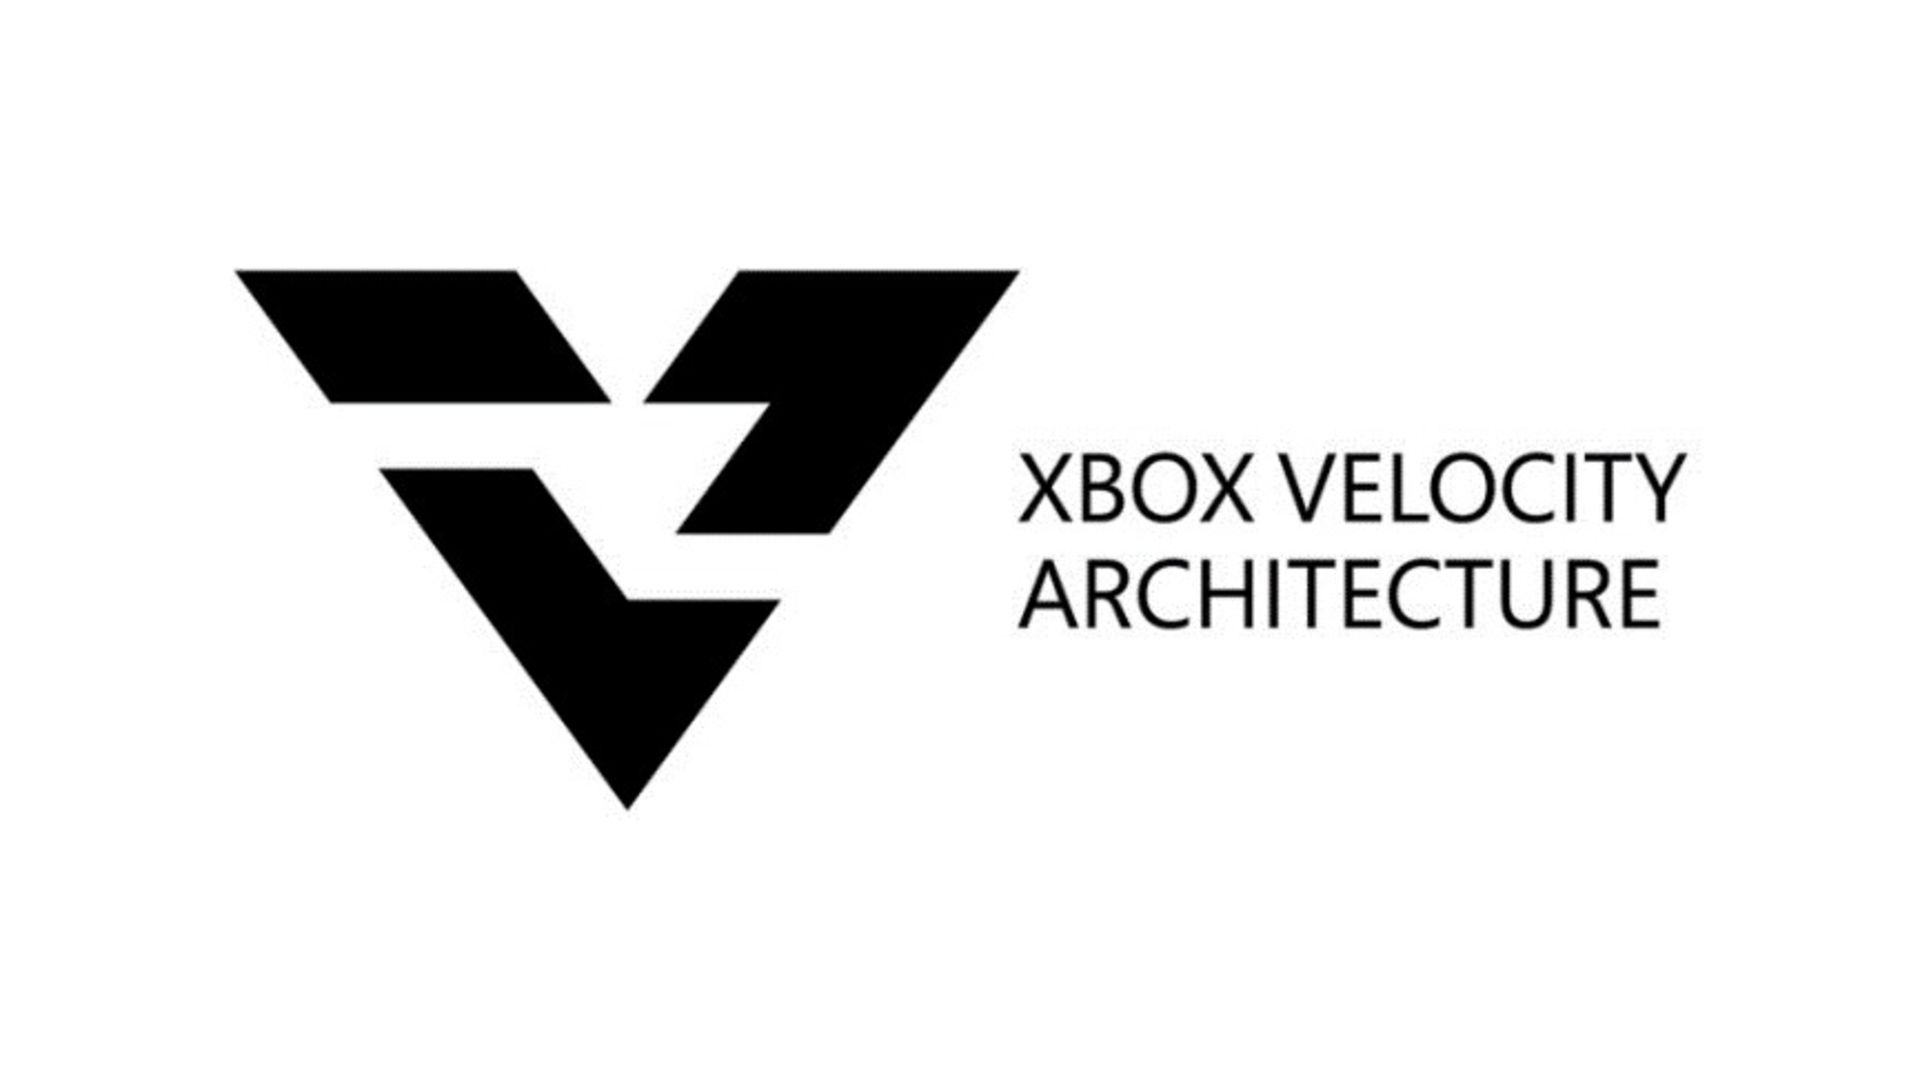 مرجع متخصصين ايران Xbox Velocity Architecture